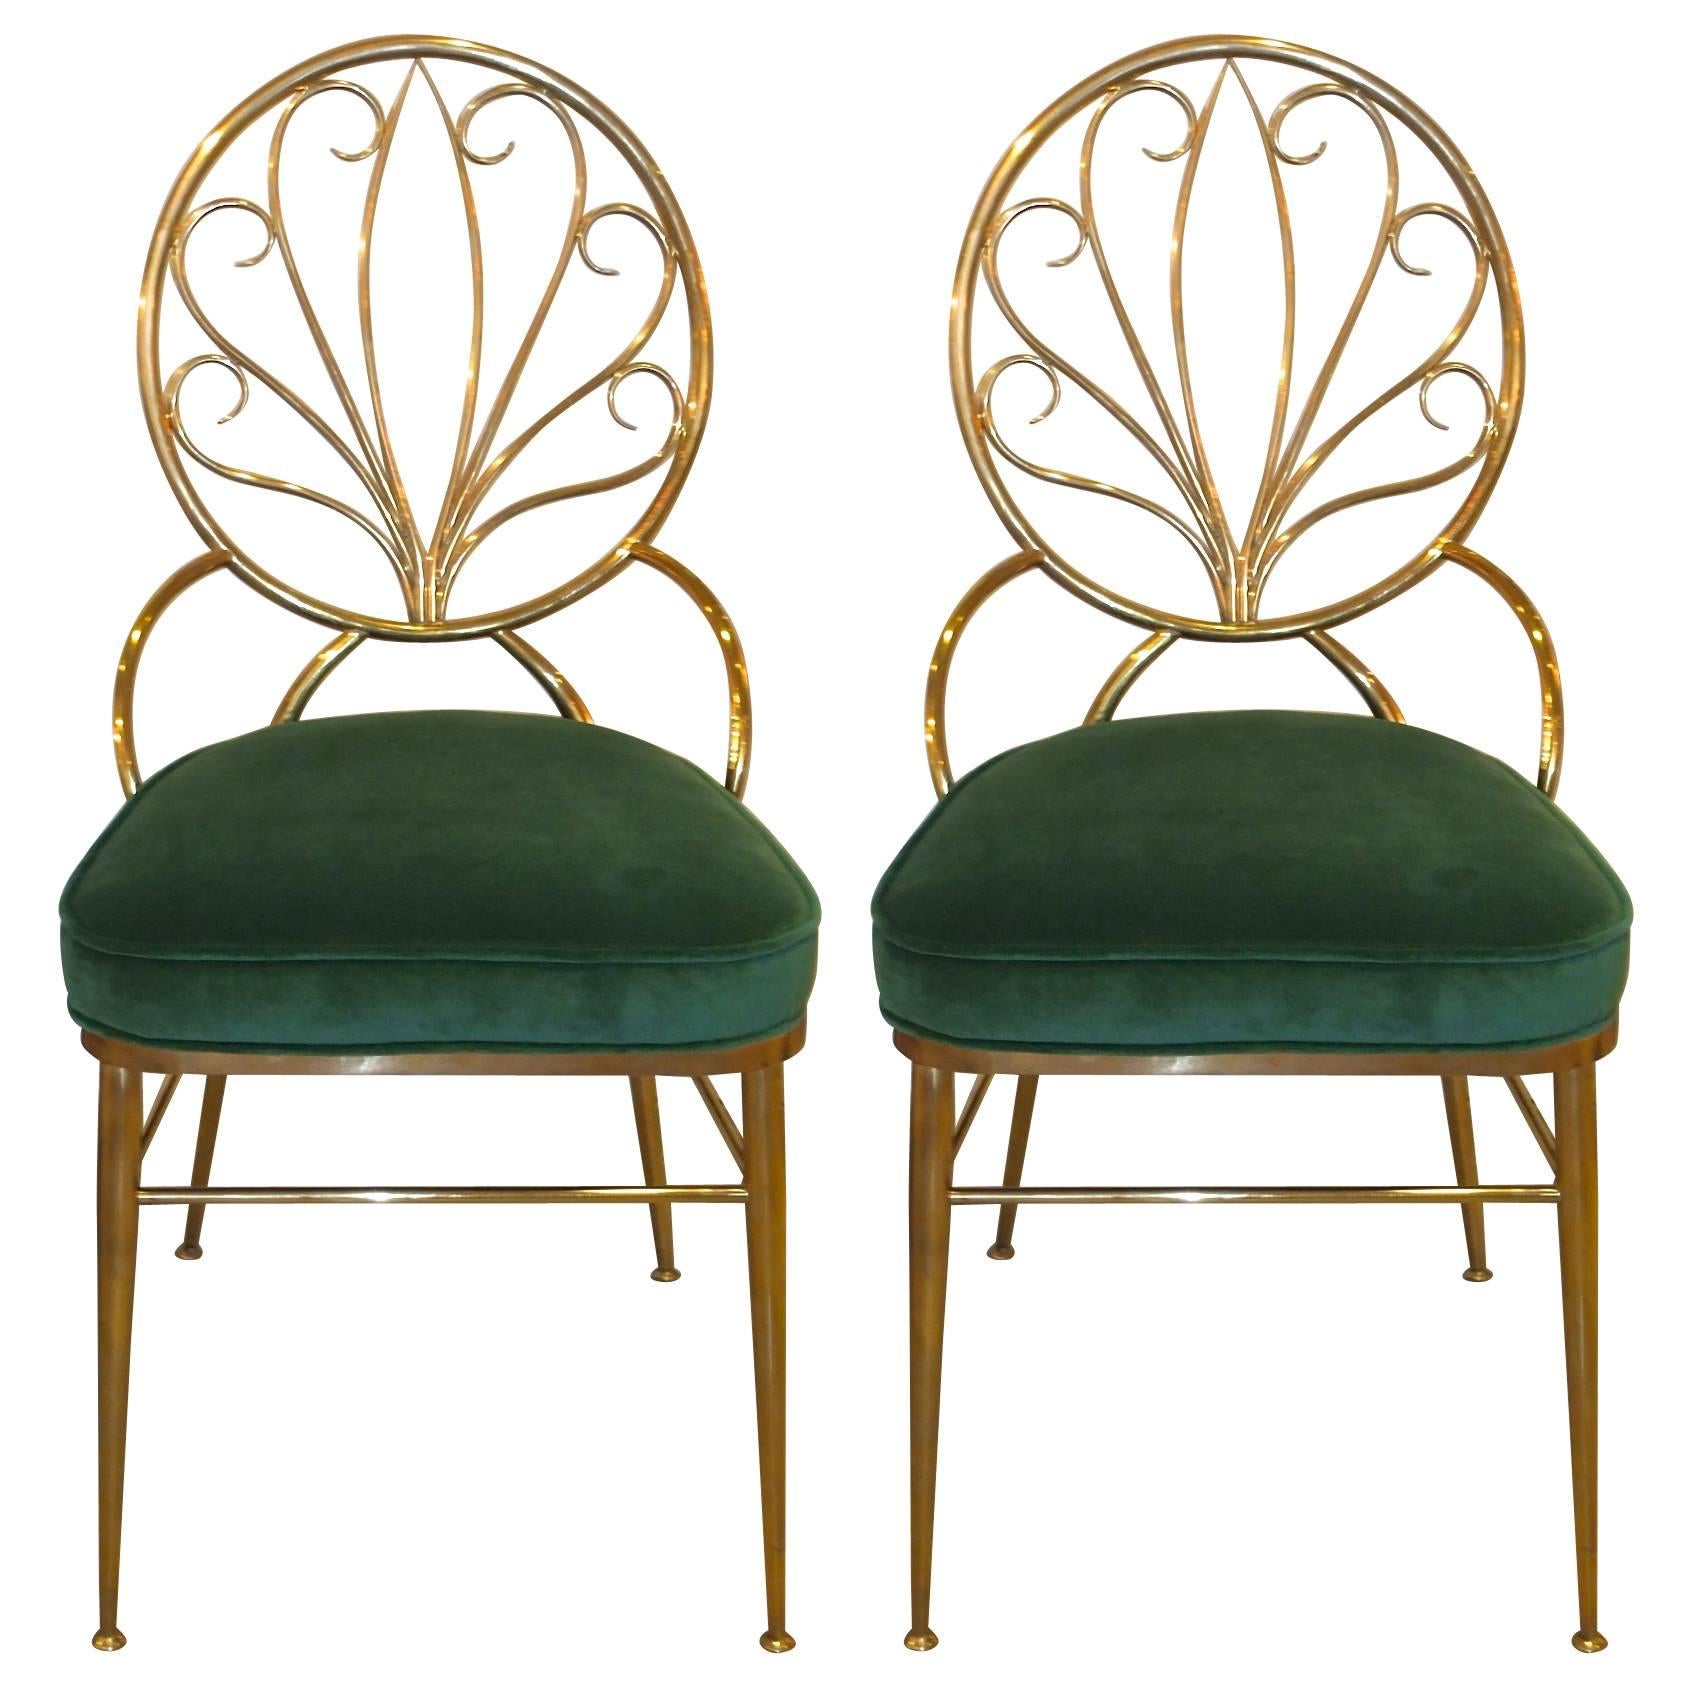 Pair of Solid Brass Chiavari Chairs